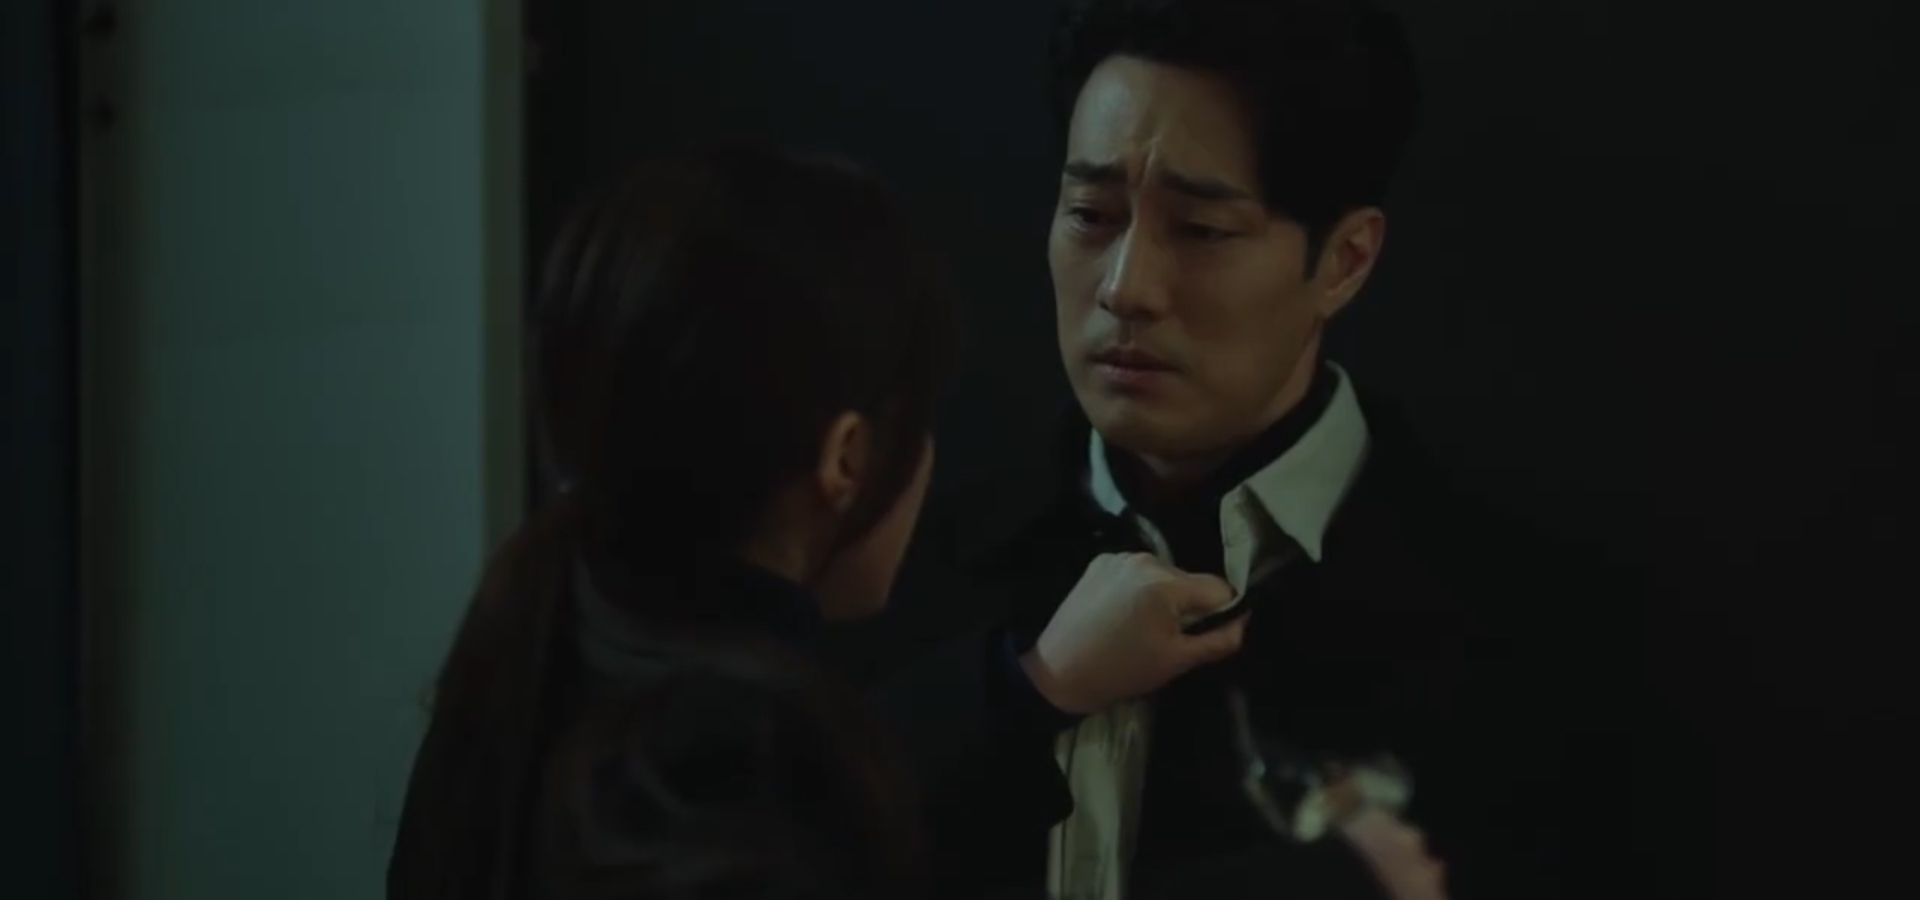 Bác sĩ luật sư tập 5: So Ji Sub tiết lộ sự thật chấn động cho tình cũ, bắt tay với Shin Sung Rok - Ảnh 4.